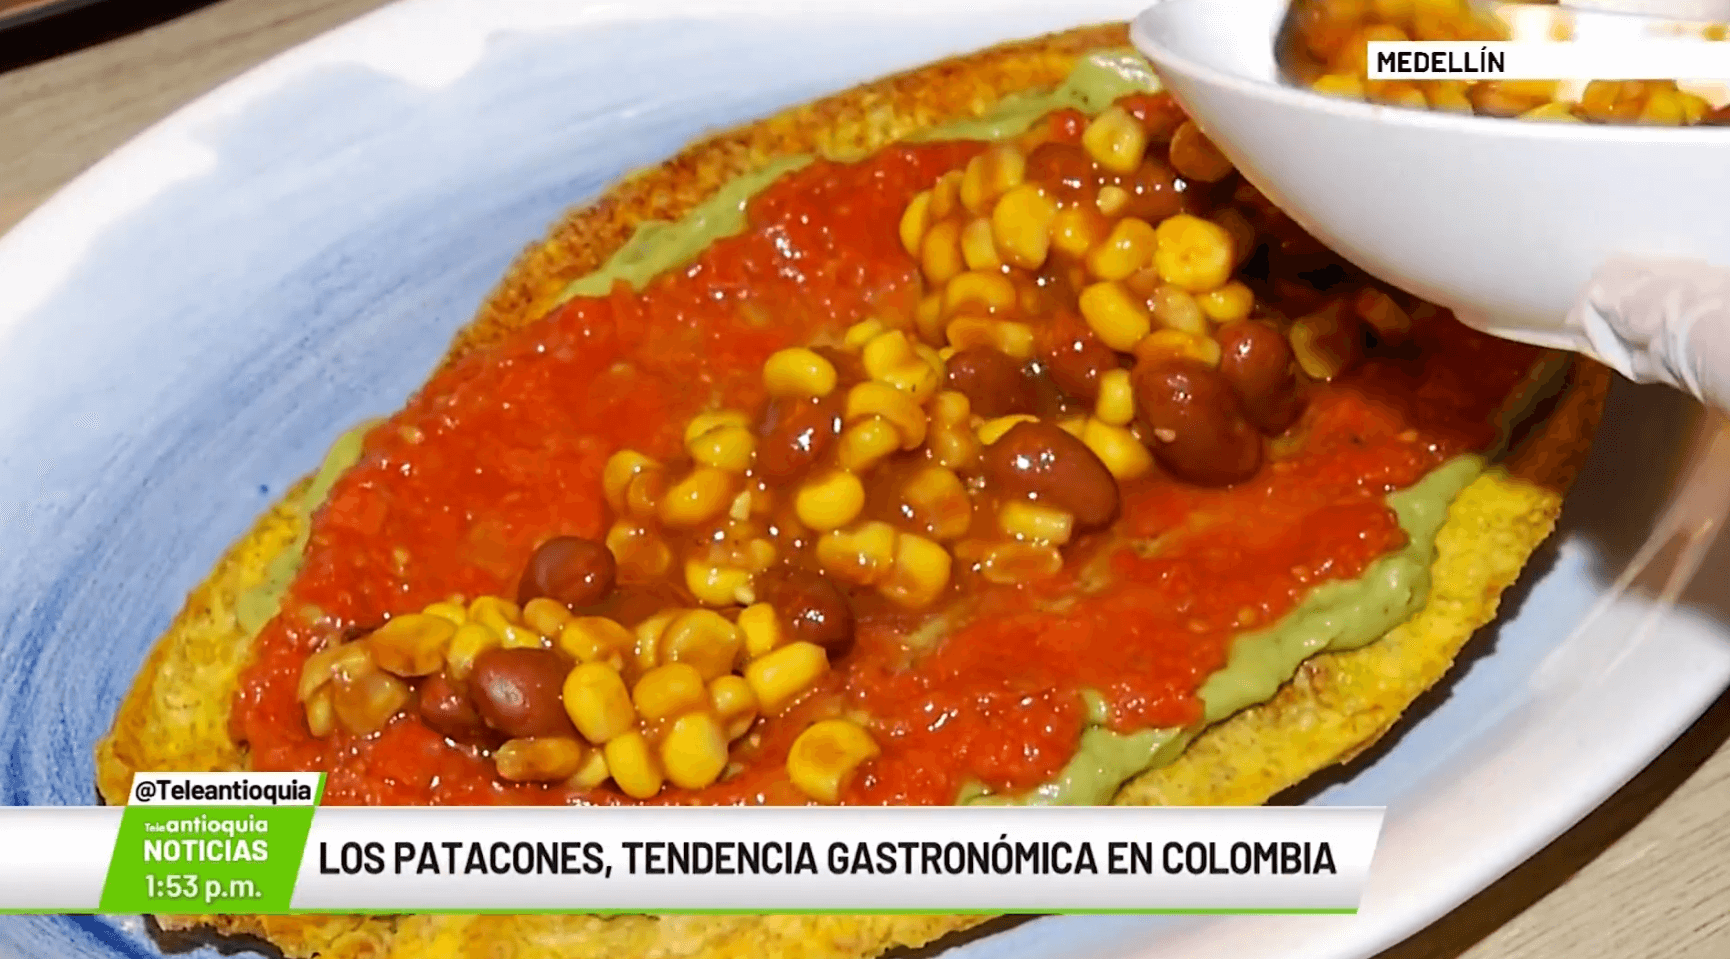 Los patacones tendencia gastronómica en Colombia